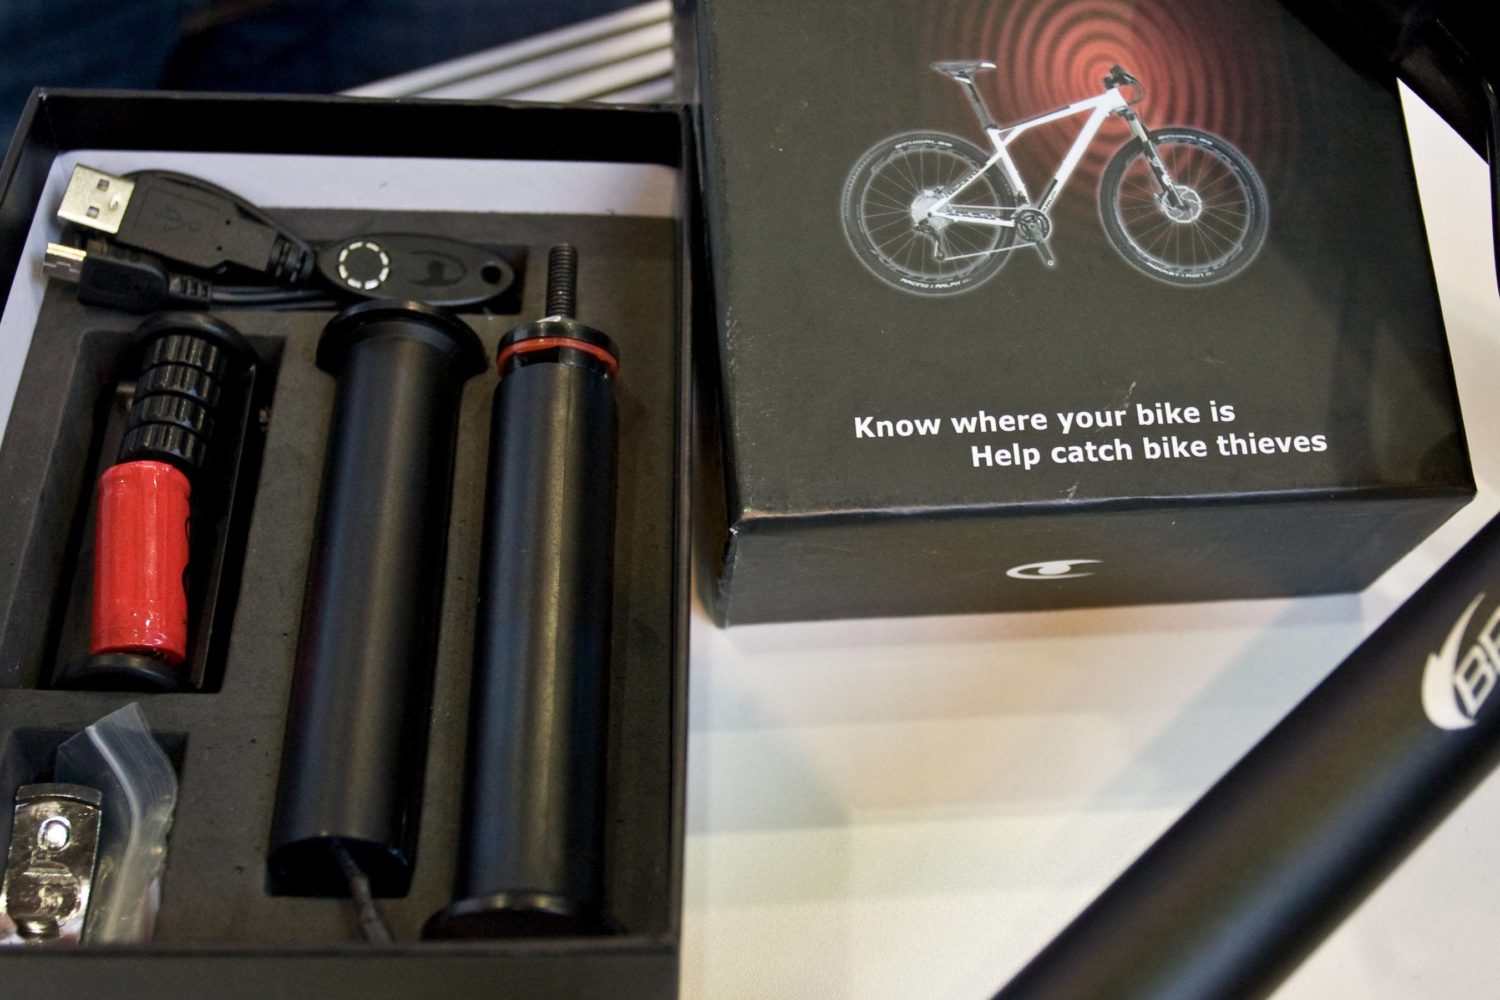 GPS Tracker am Rad können sich bei teuren Fahrrädern lohnen. Foto: imago images/Eibner